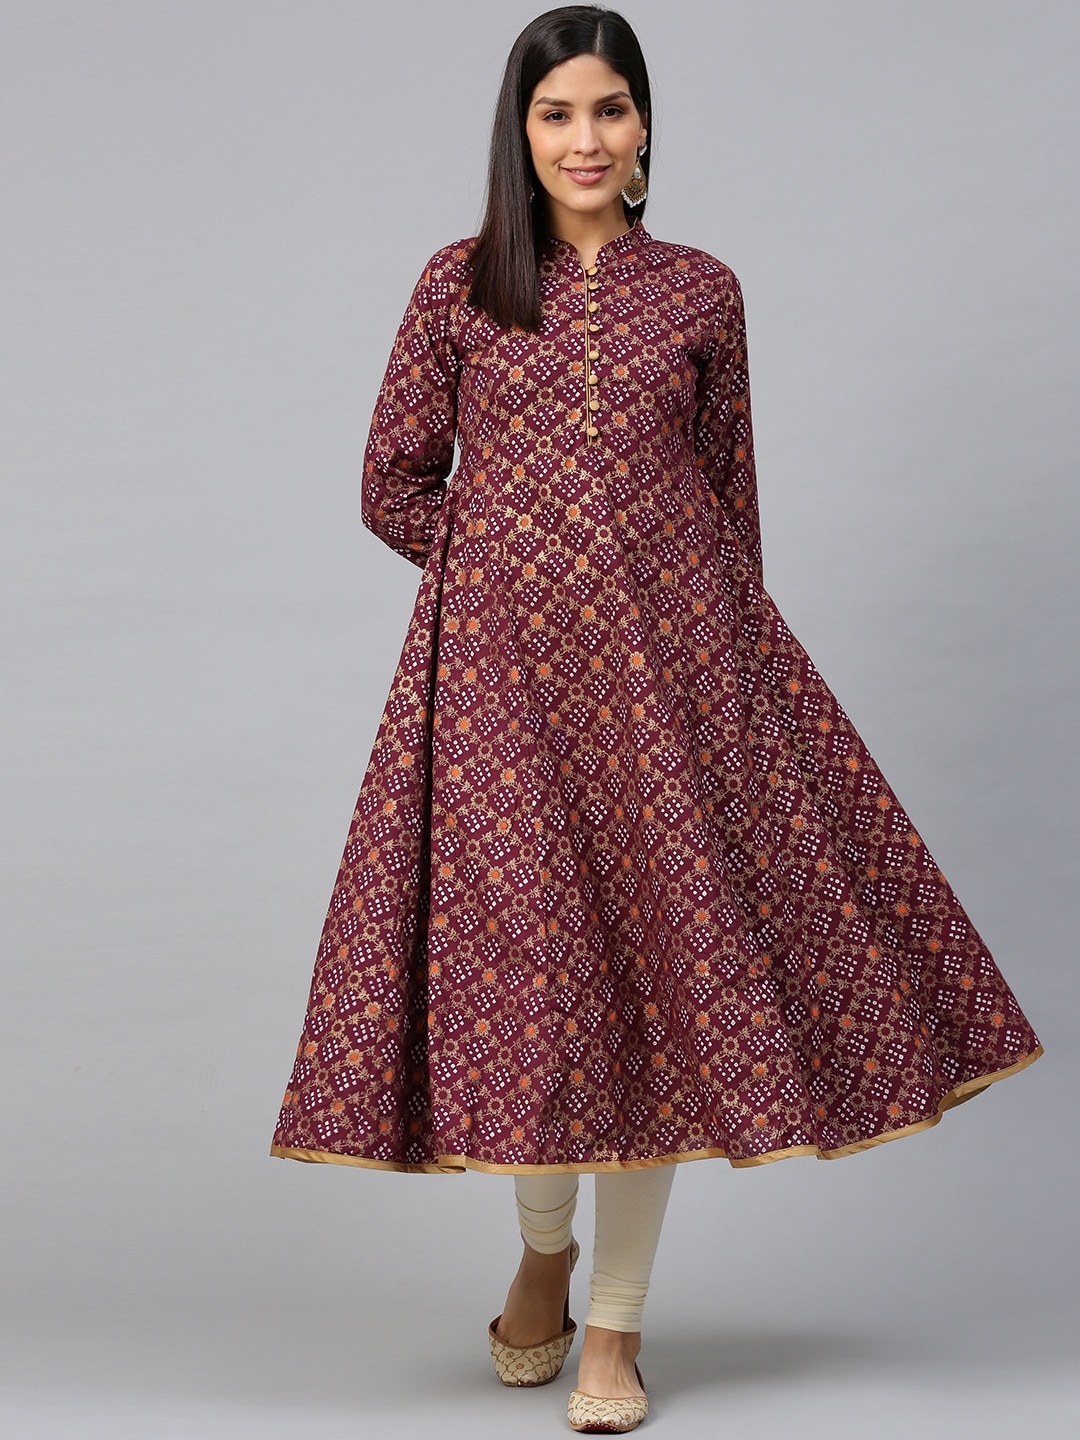 Bhama Couture Women Magenta & Golden Bandhani Printed Anarkali Kurta Price in India